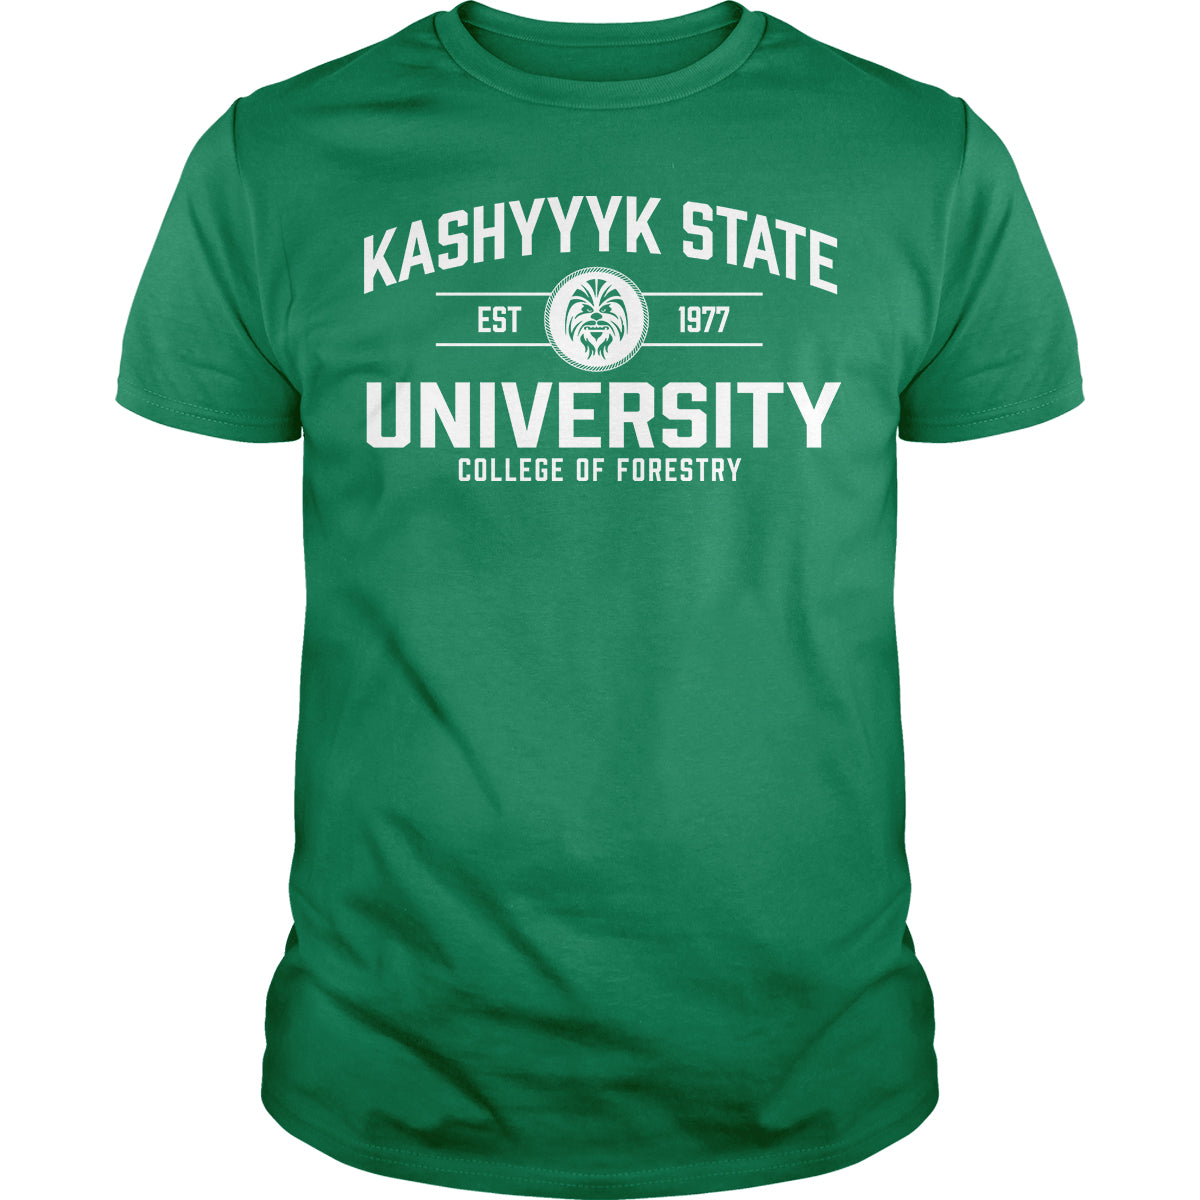 Kashyyyk State University